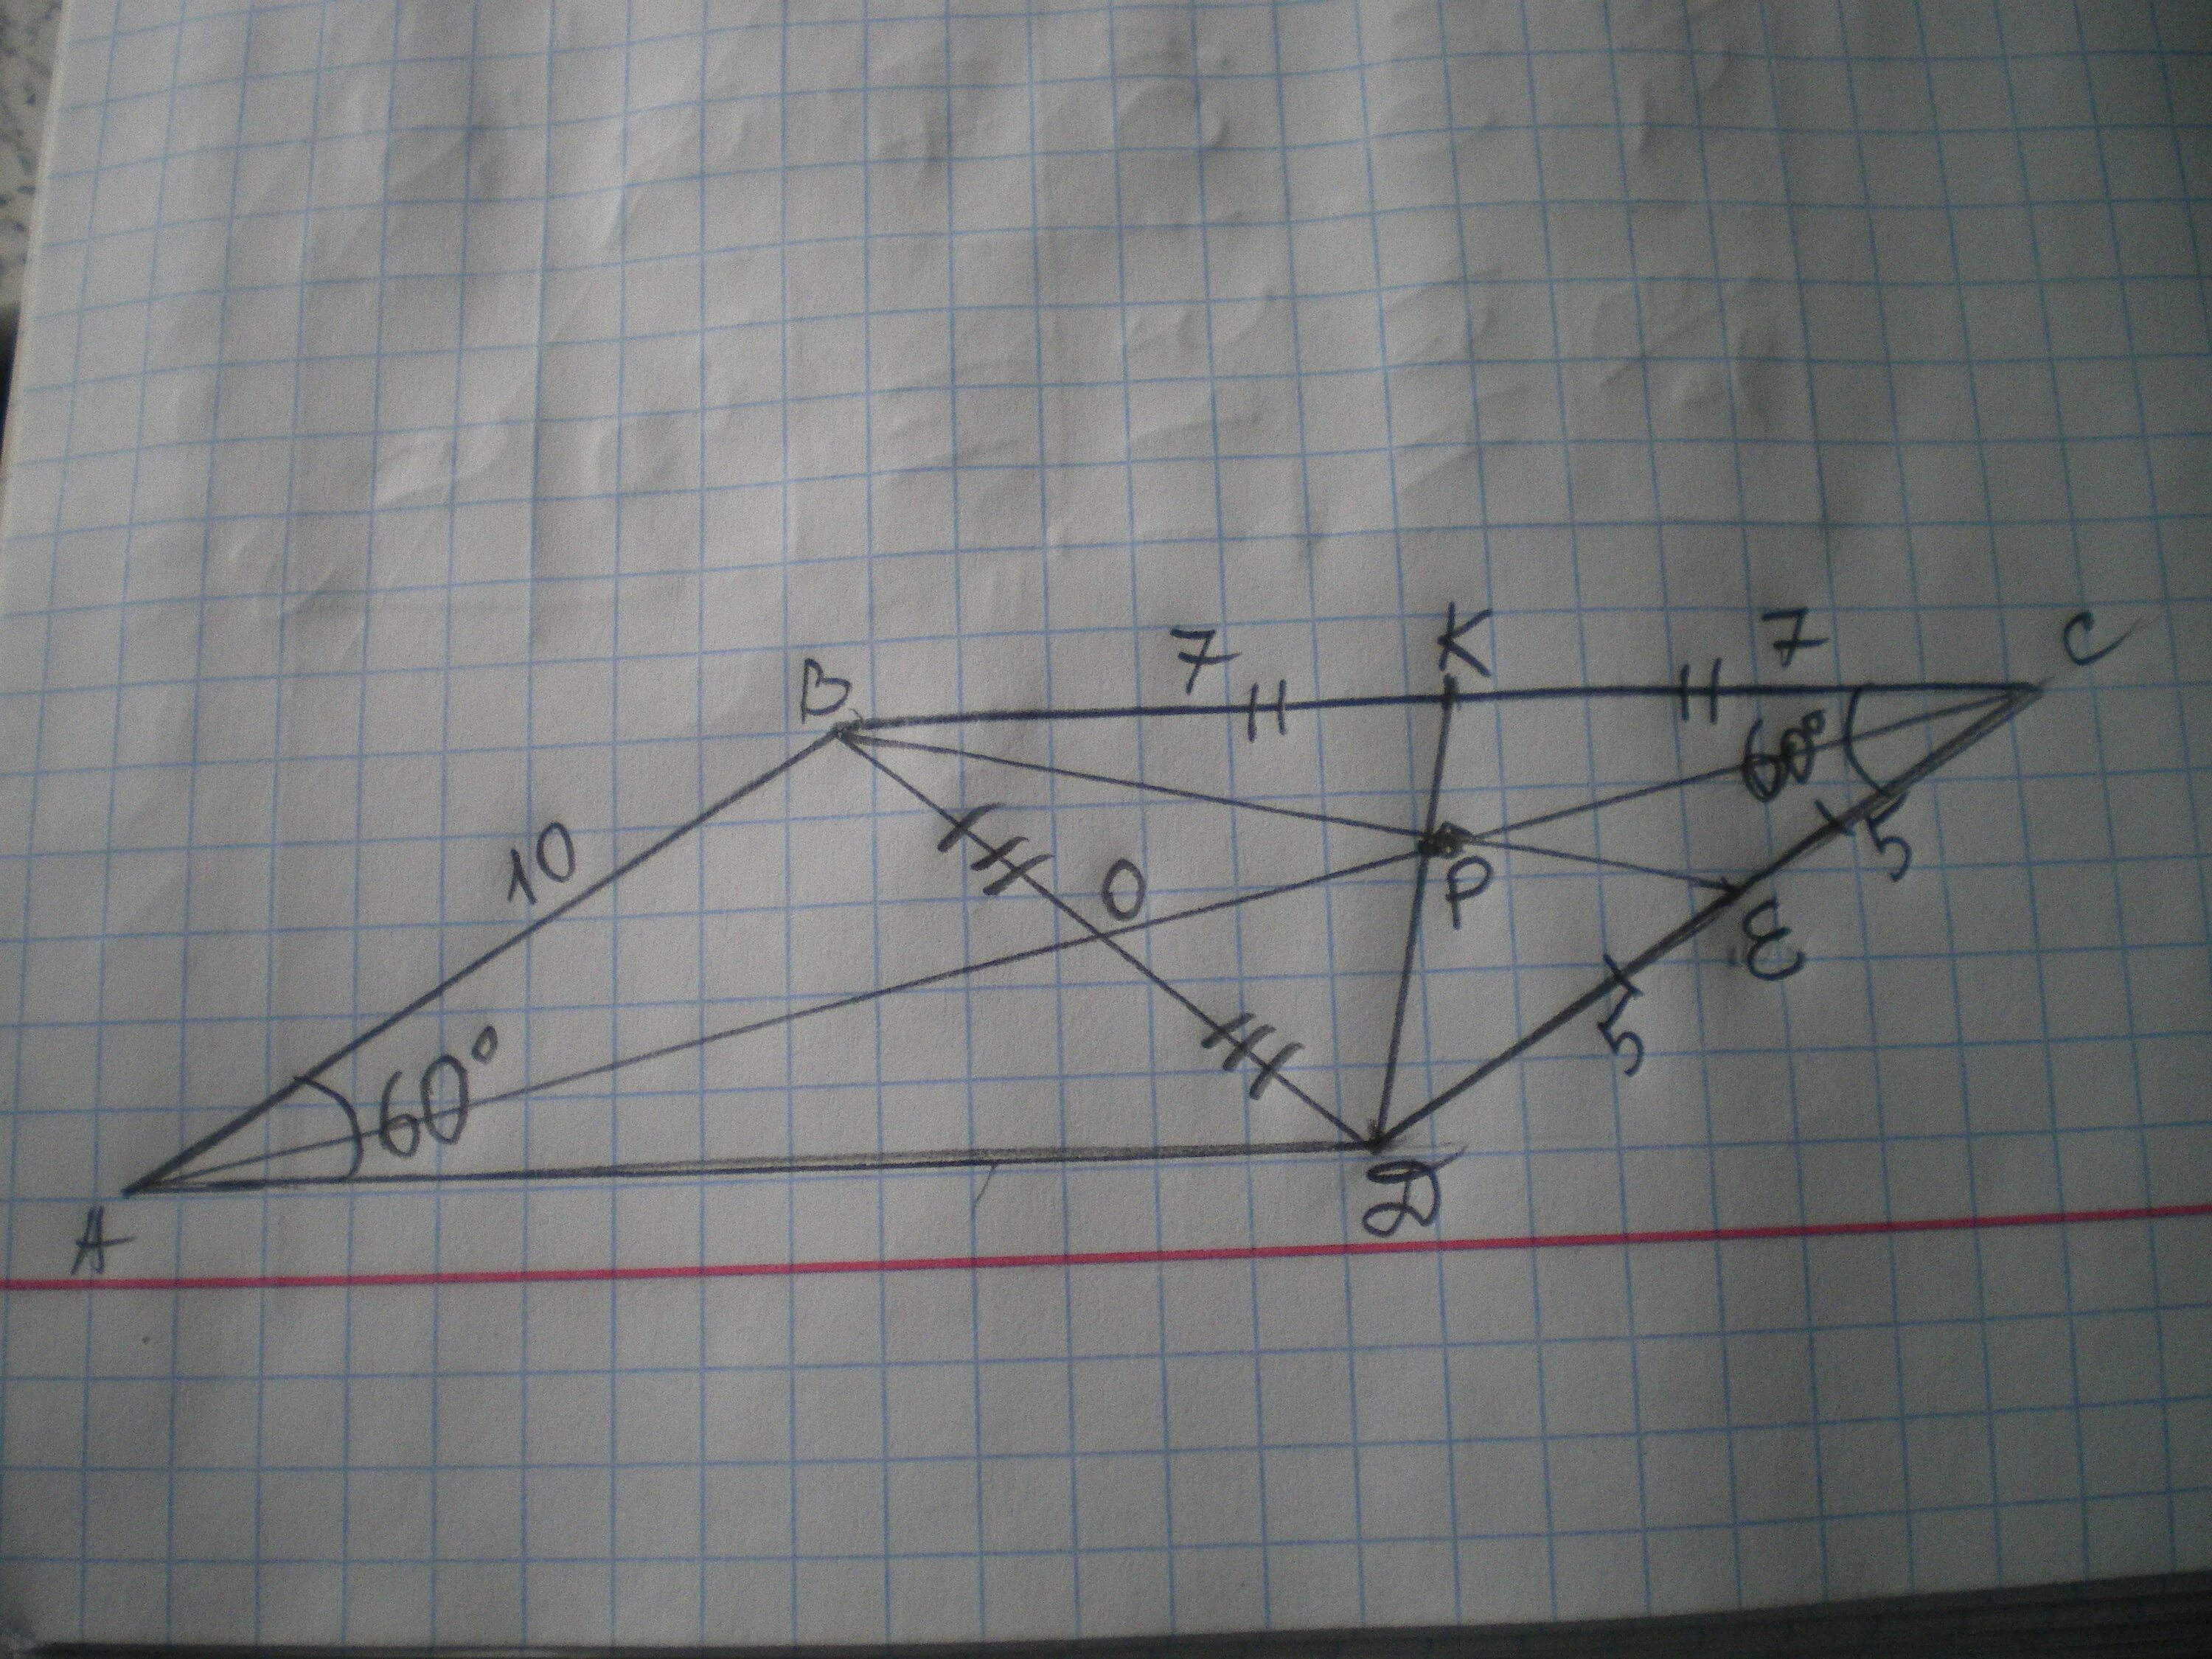 В параллелограмме авсд ав сд. Диагонали параллелограмма АВСД пересекаются в точке о. Медиана в параллелограмме. ABCD параллелограмм, АВ=А, АС=В. В параллелограмме АВСД угол а равен 60 диагональ.